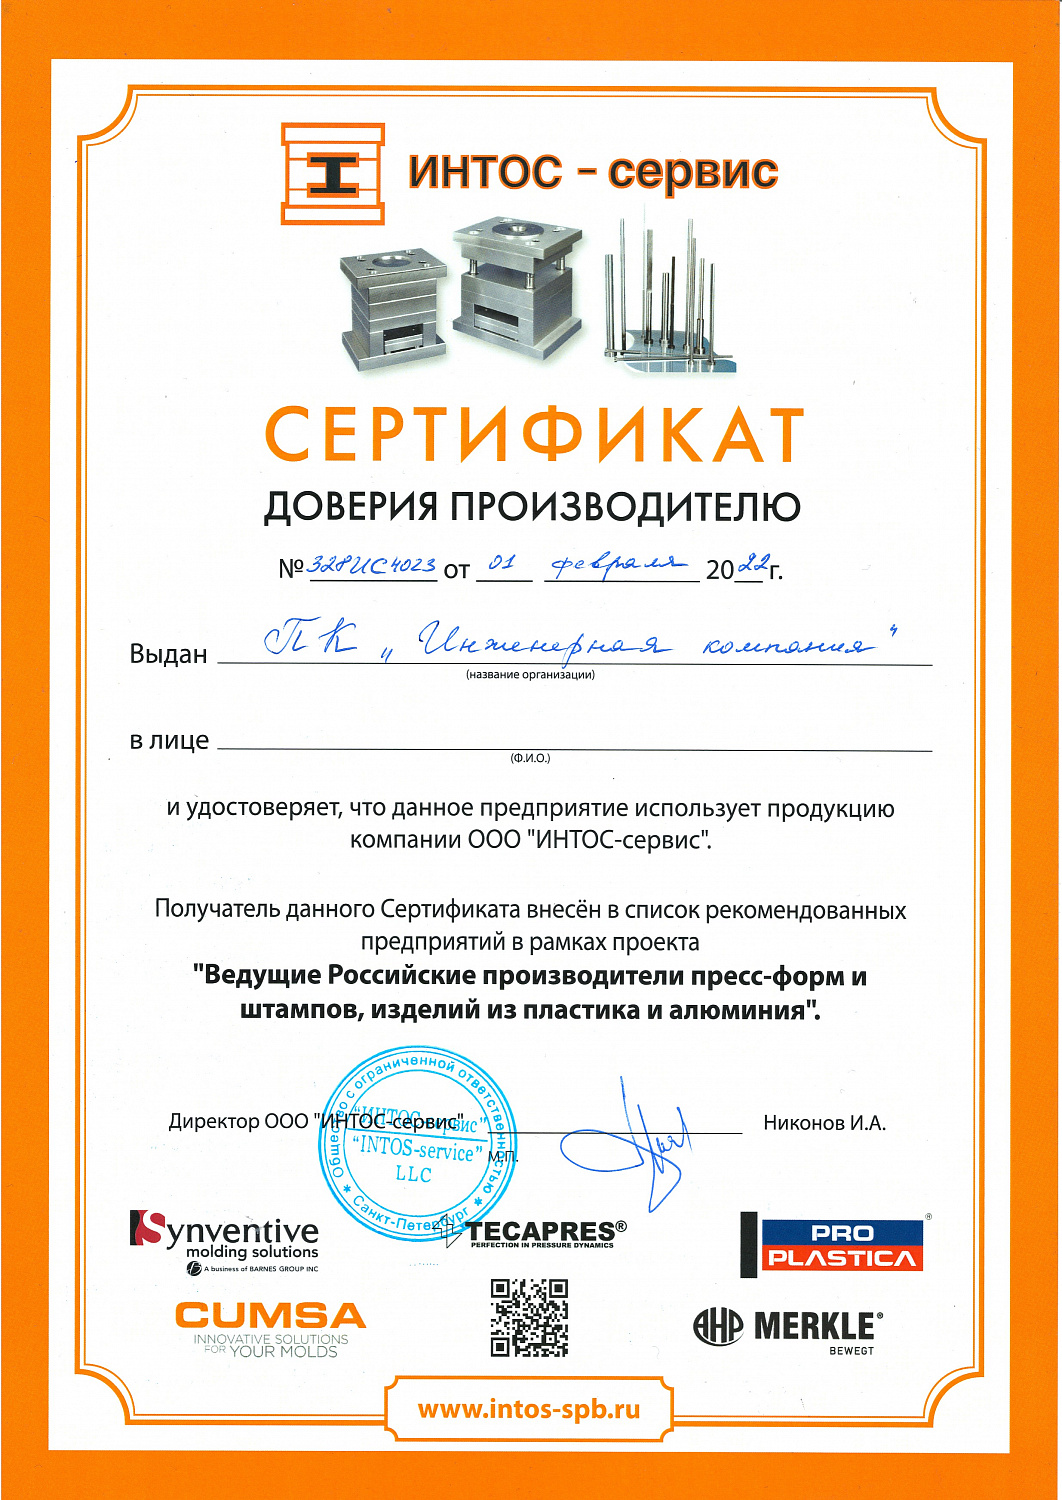 Сертификат доверия производителю от ИНТОС-сервис